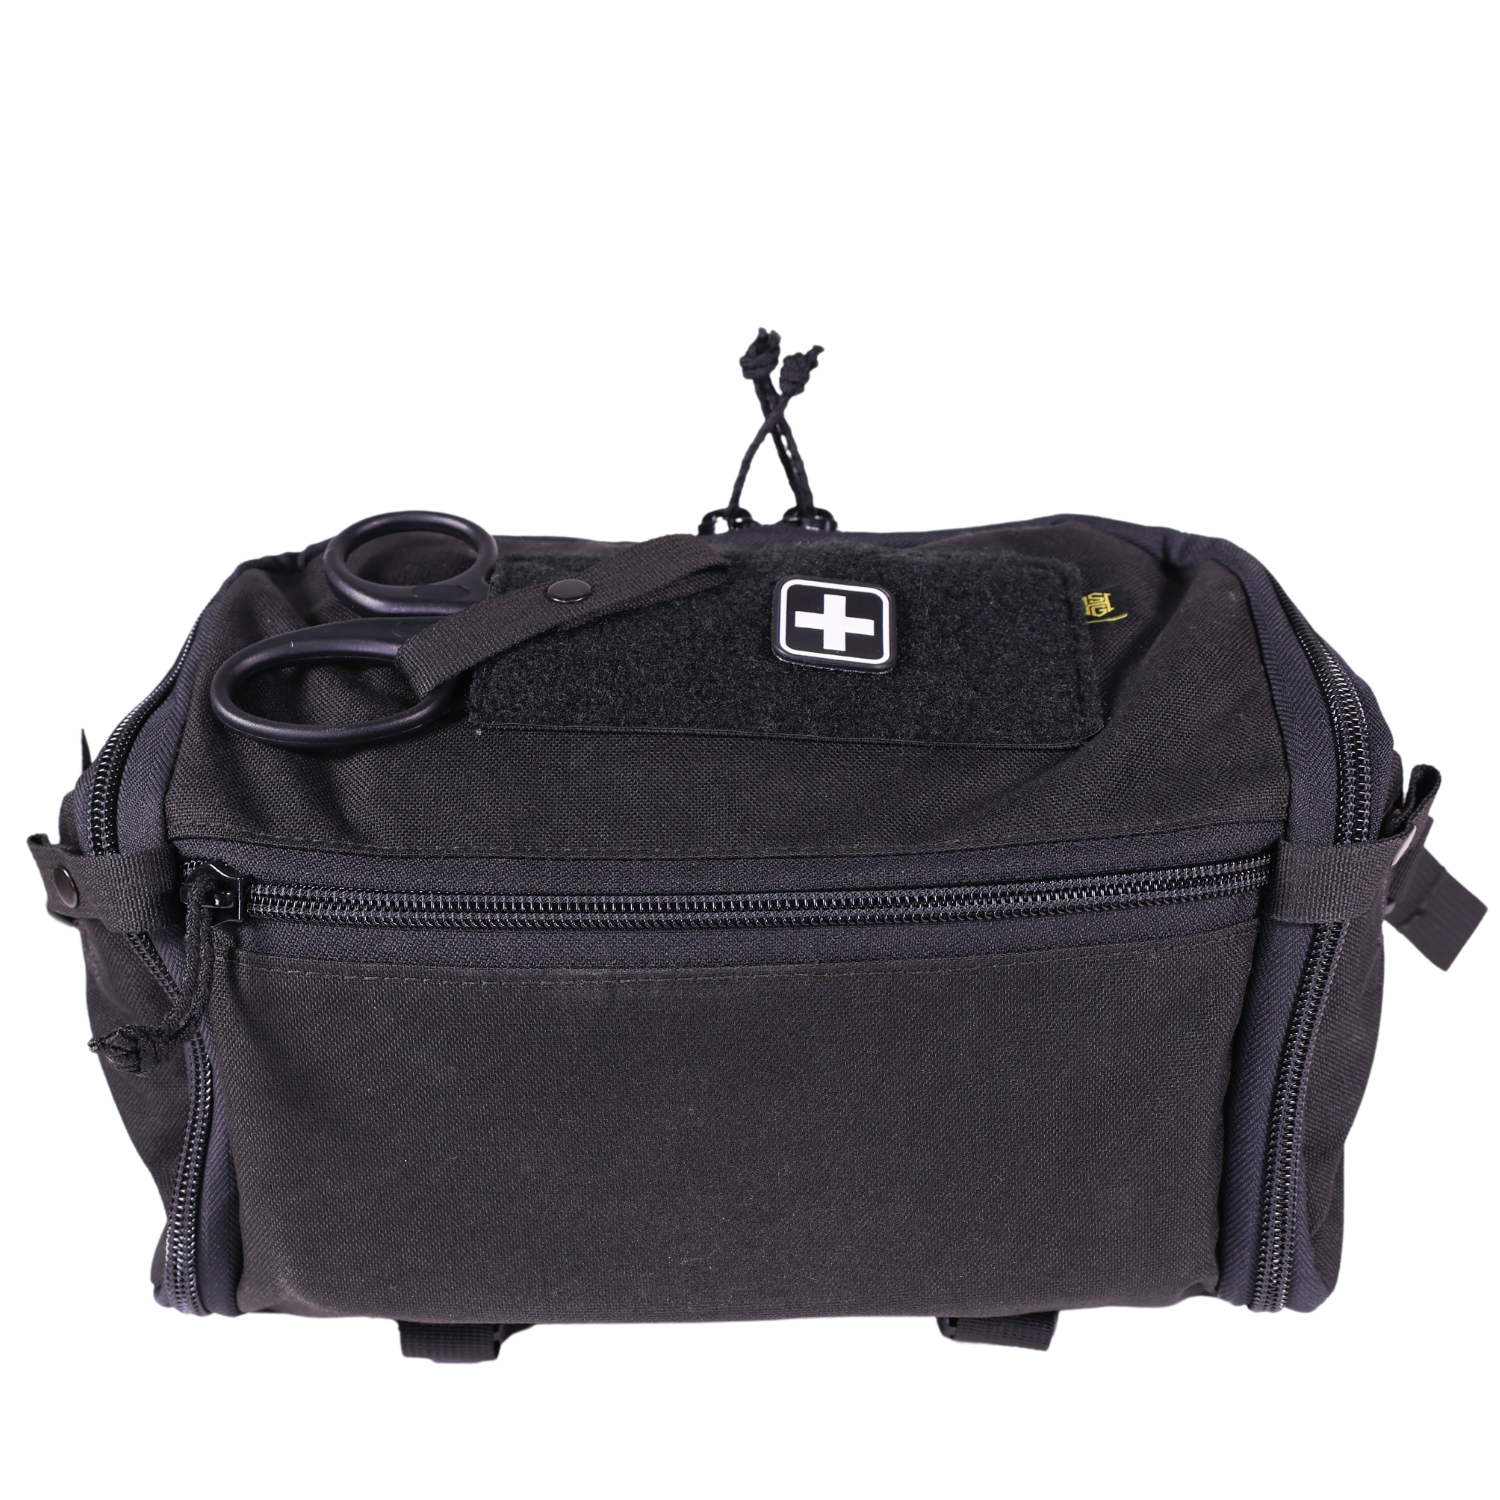 HSGI Team Response Kit Bag – Black | HSGI